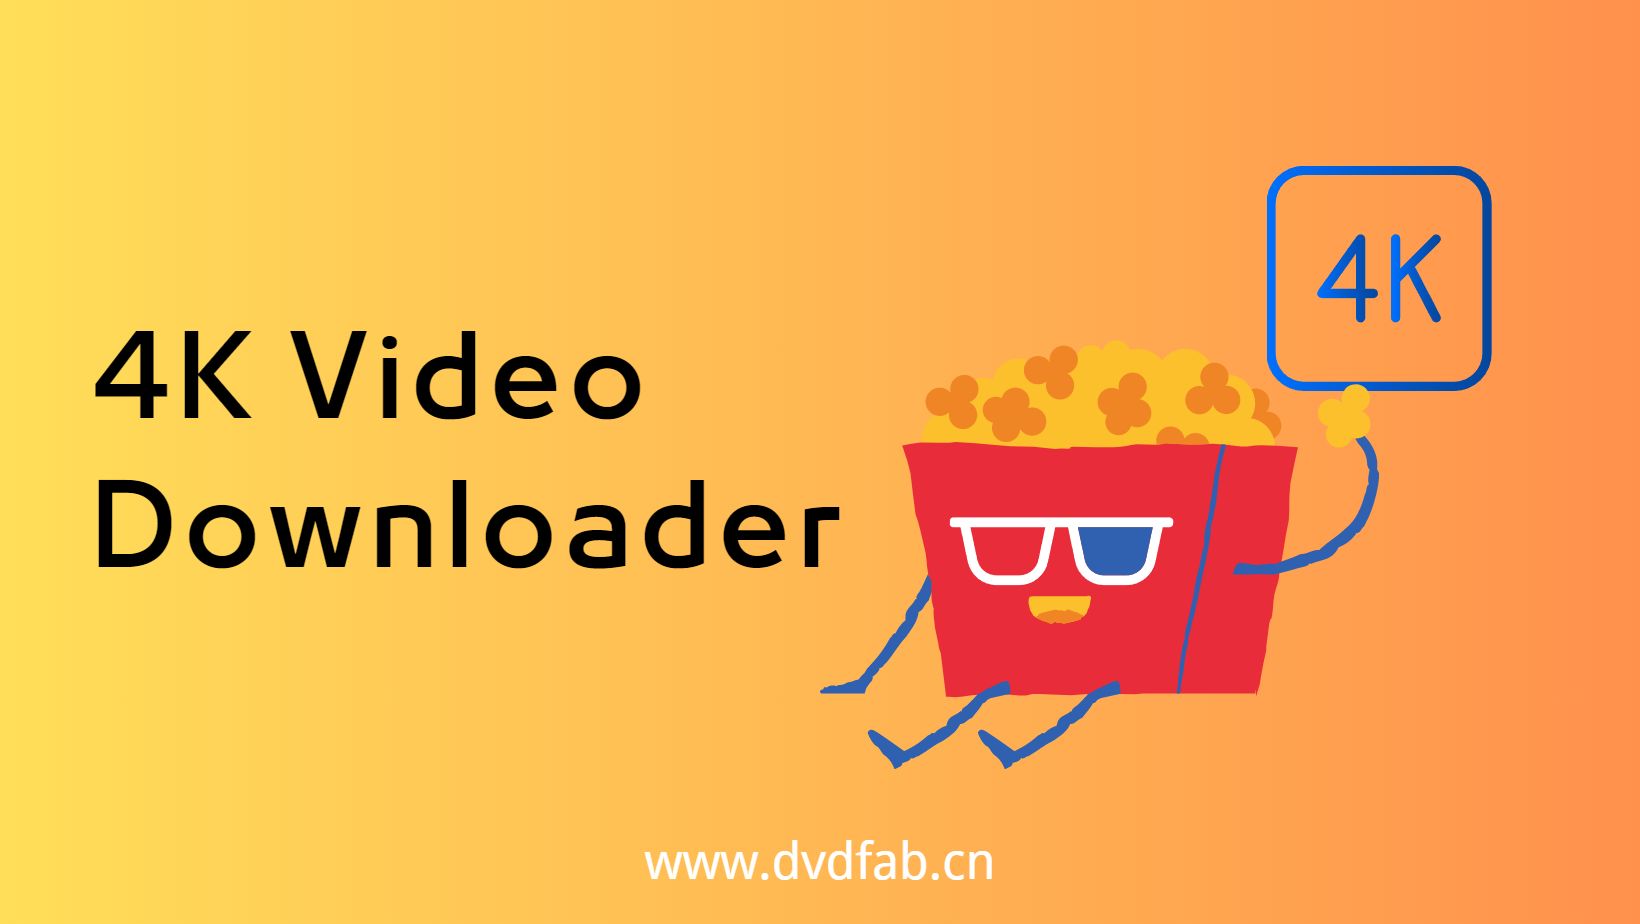 4k video downloader forum